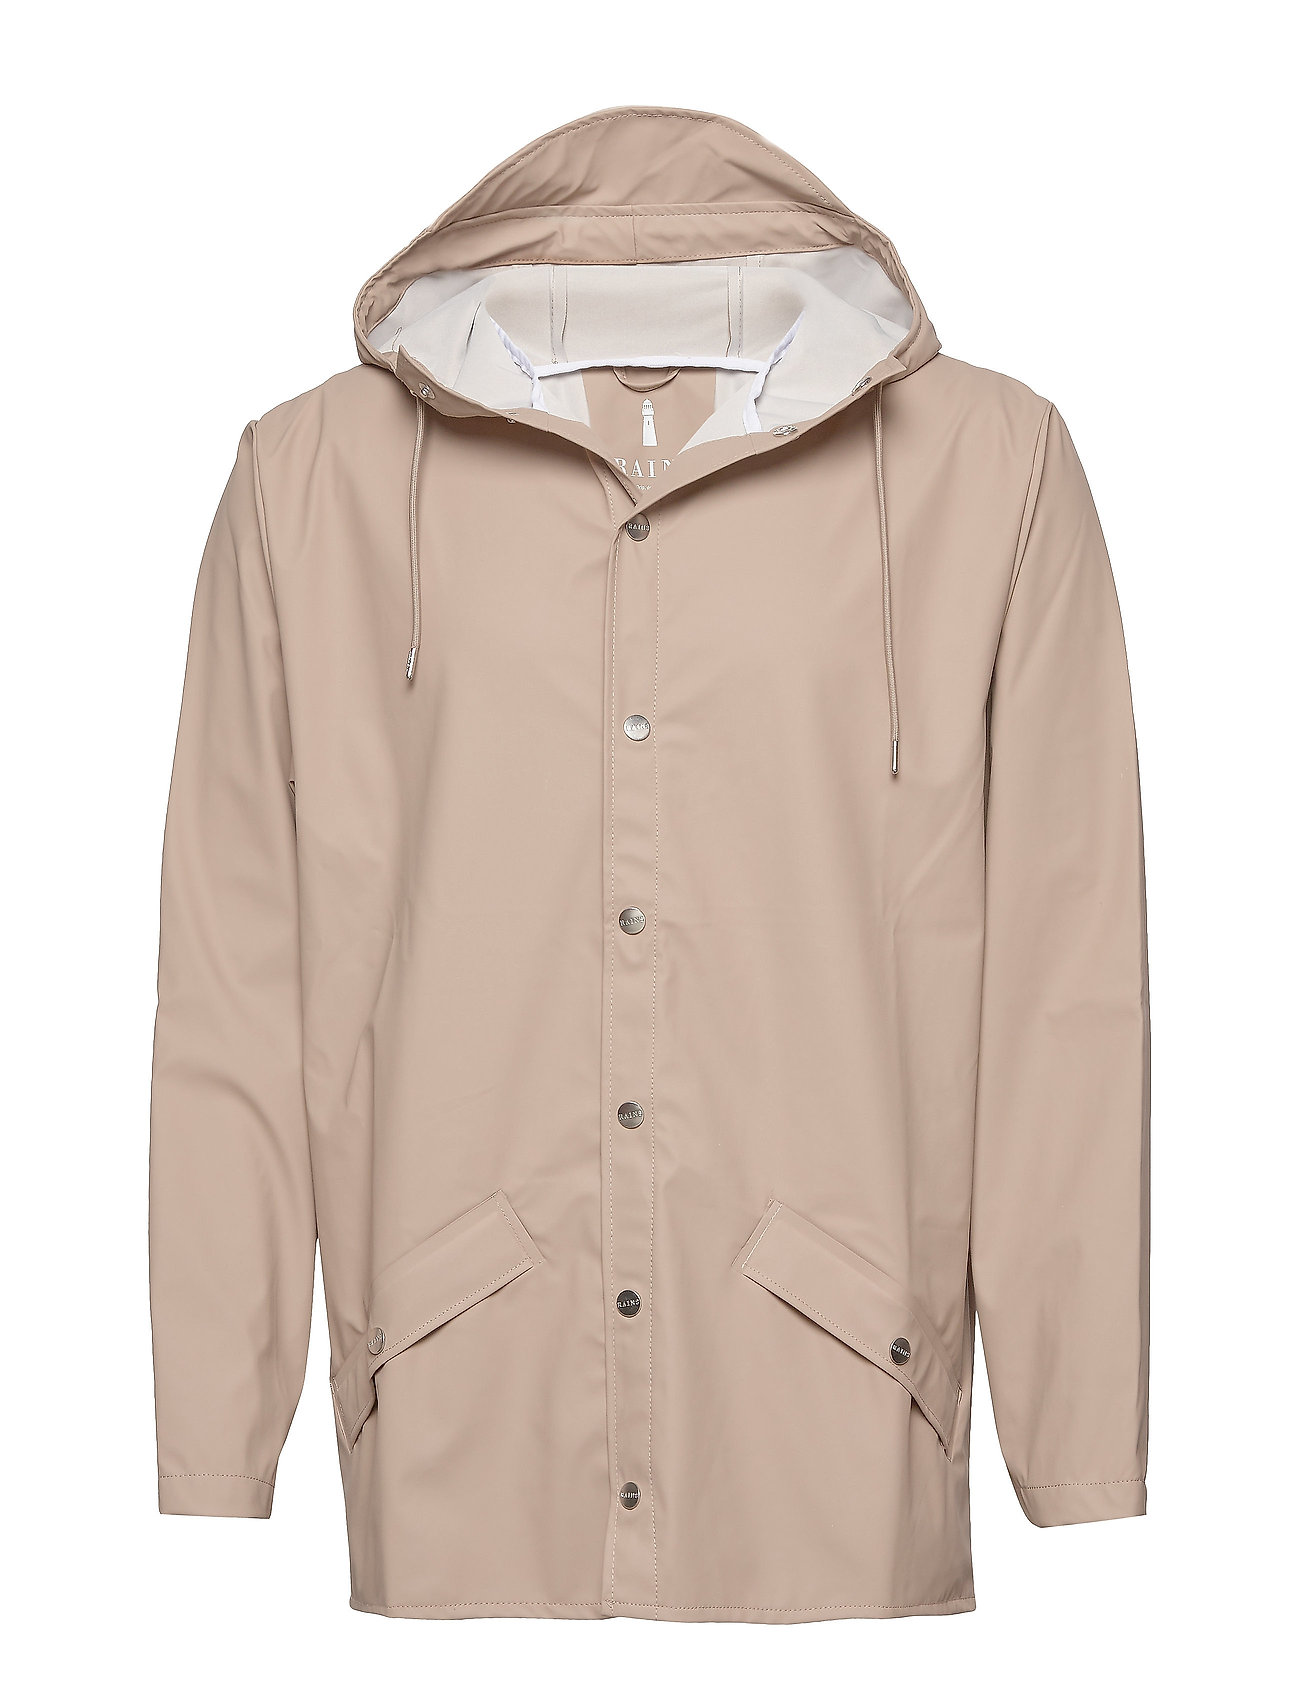 Jacket Outerwear Rainwear Rain Coats Beige Rains